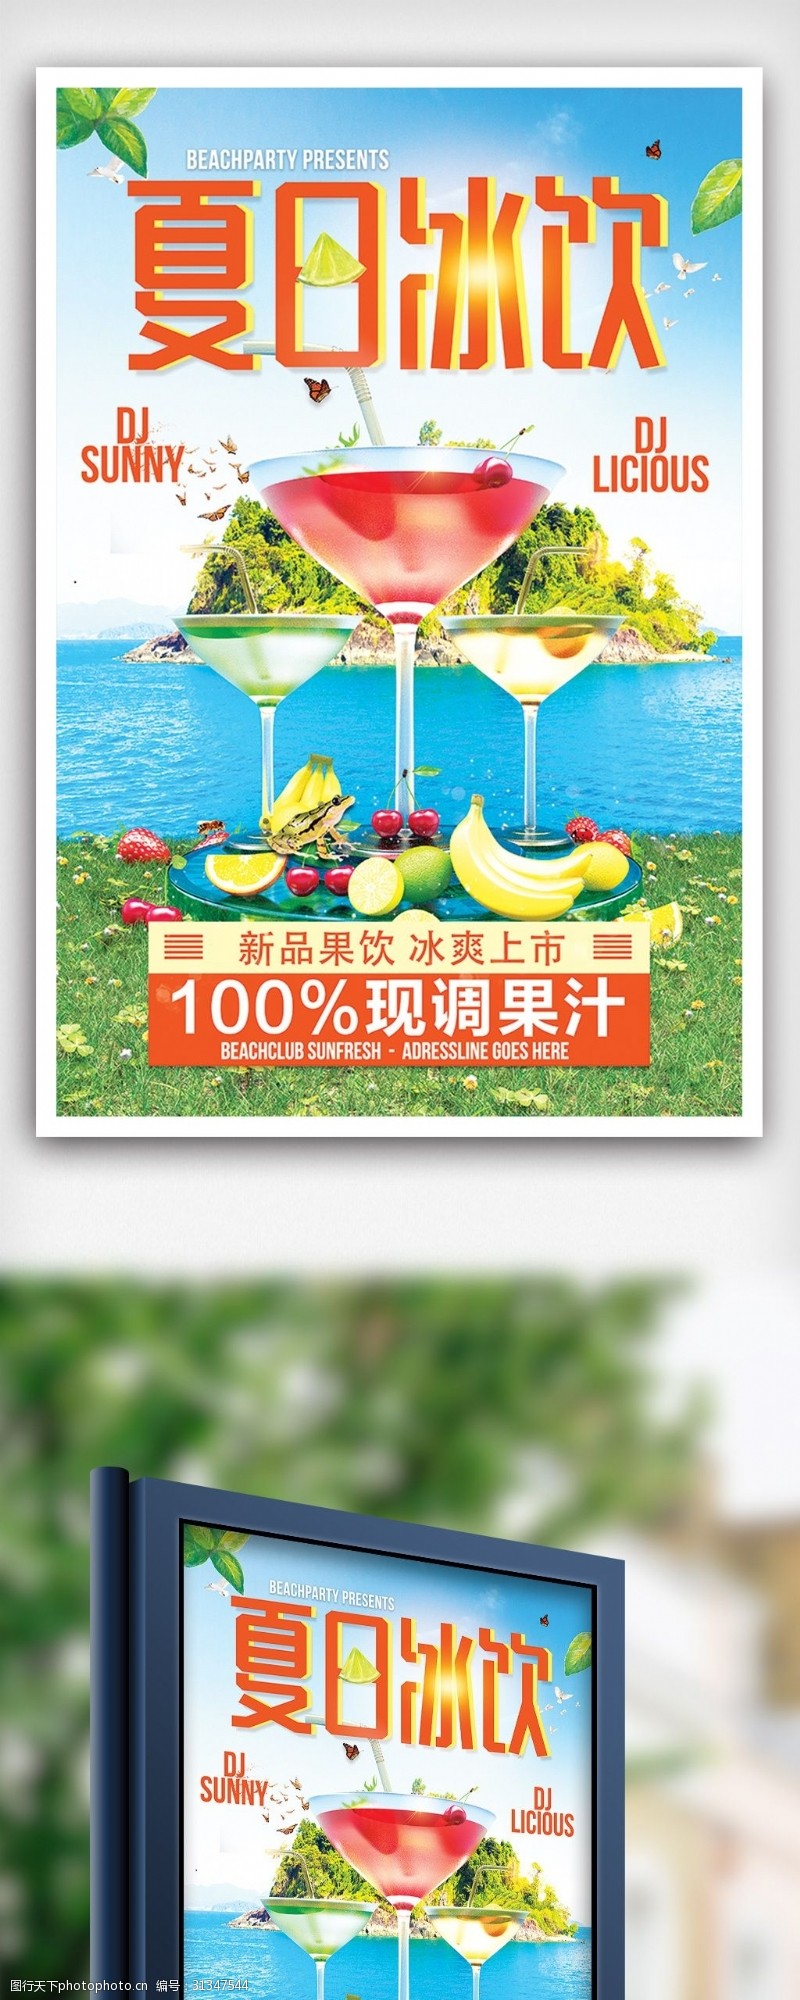 特价图片免费下载夏季冰饮特价促销海报设计